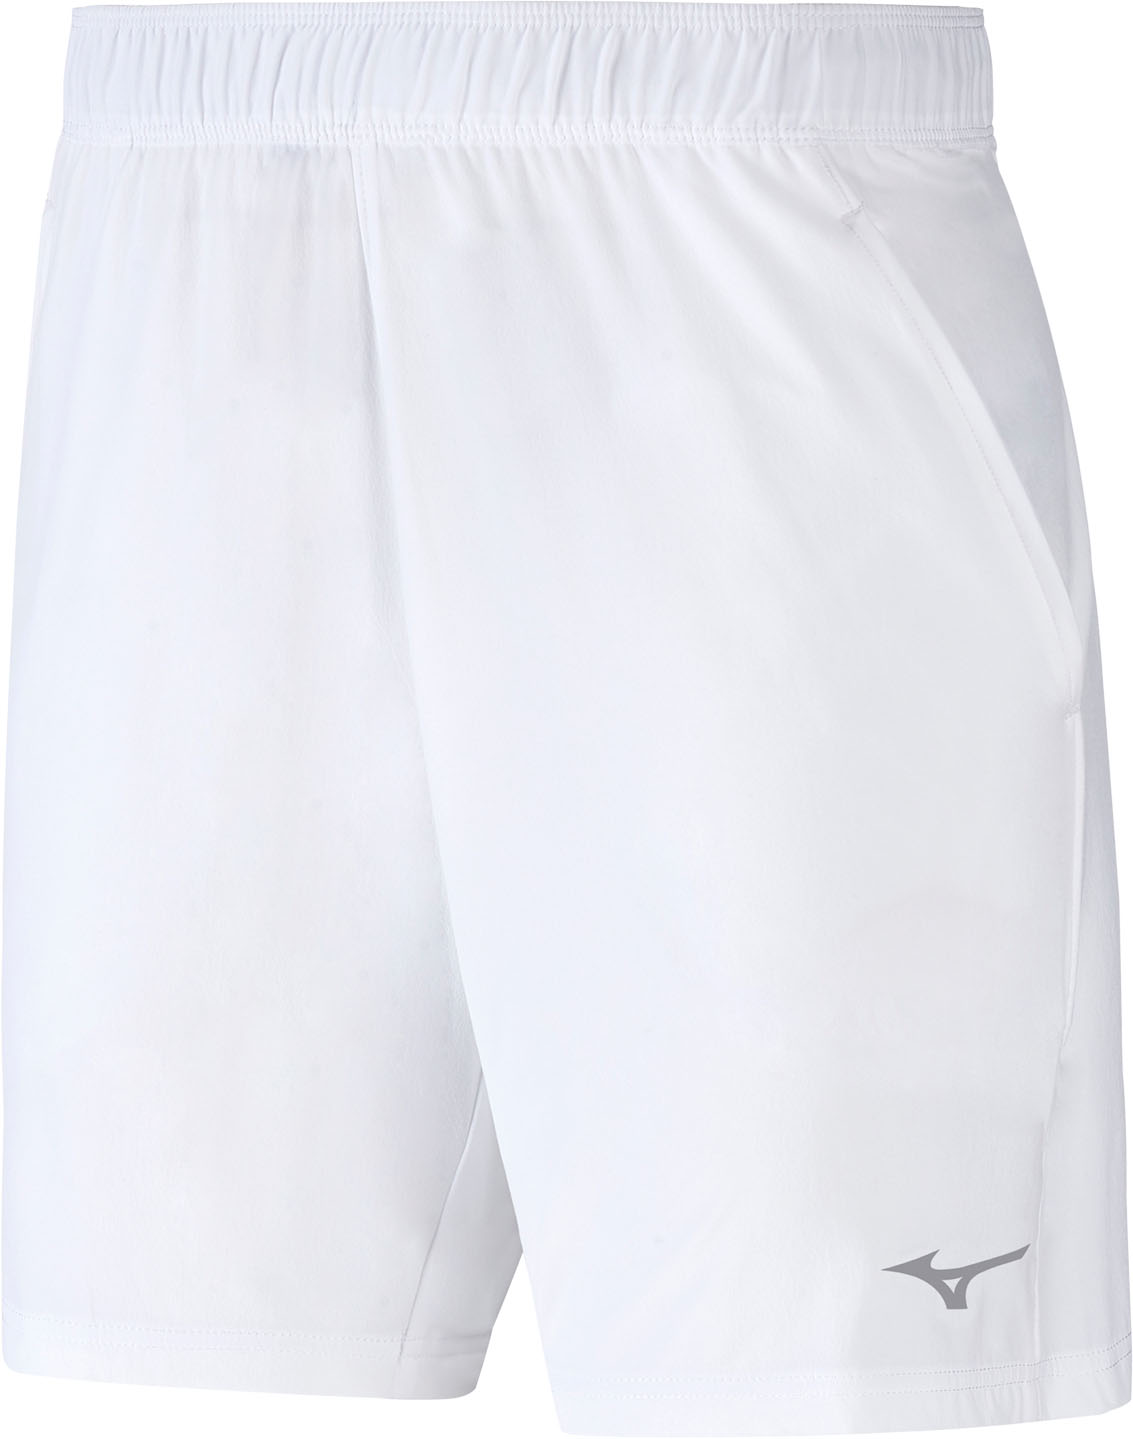 Běžecké šortky Mizuno Flex Short K2GB855001 S